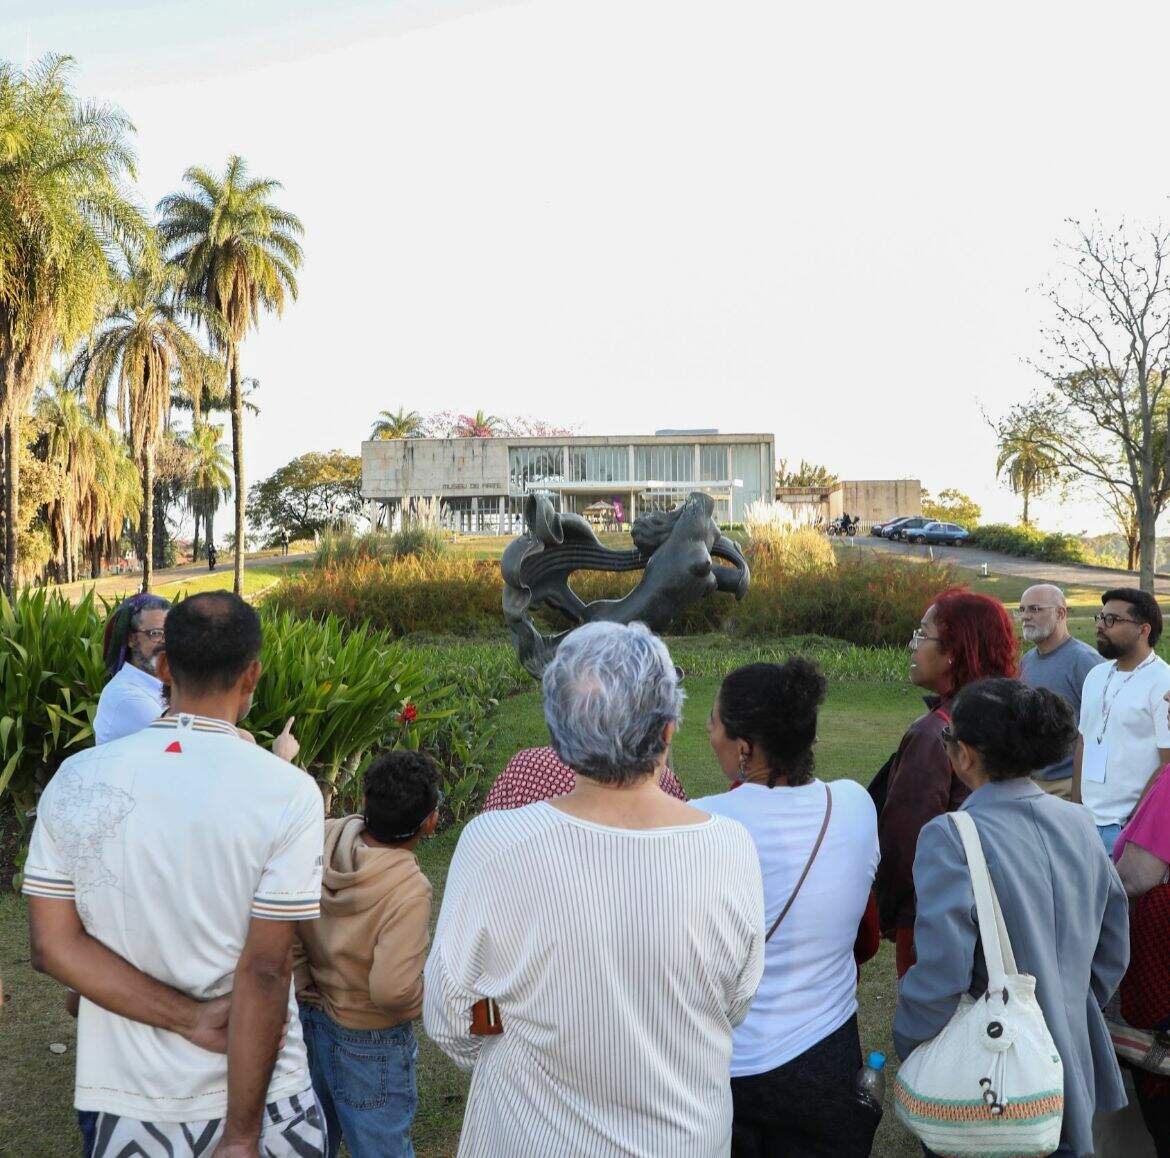 Grupo de pessoas de costas para a câmera observam ao jardim e fachada do Museu de Arte da Pampulha, localizado ao fundo da imagem.